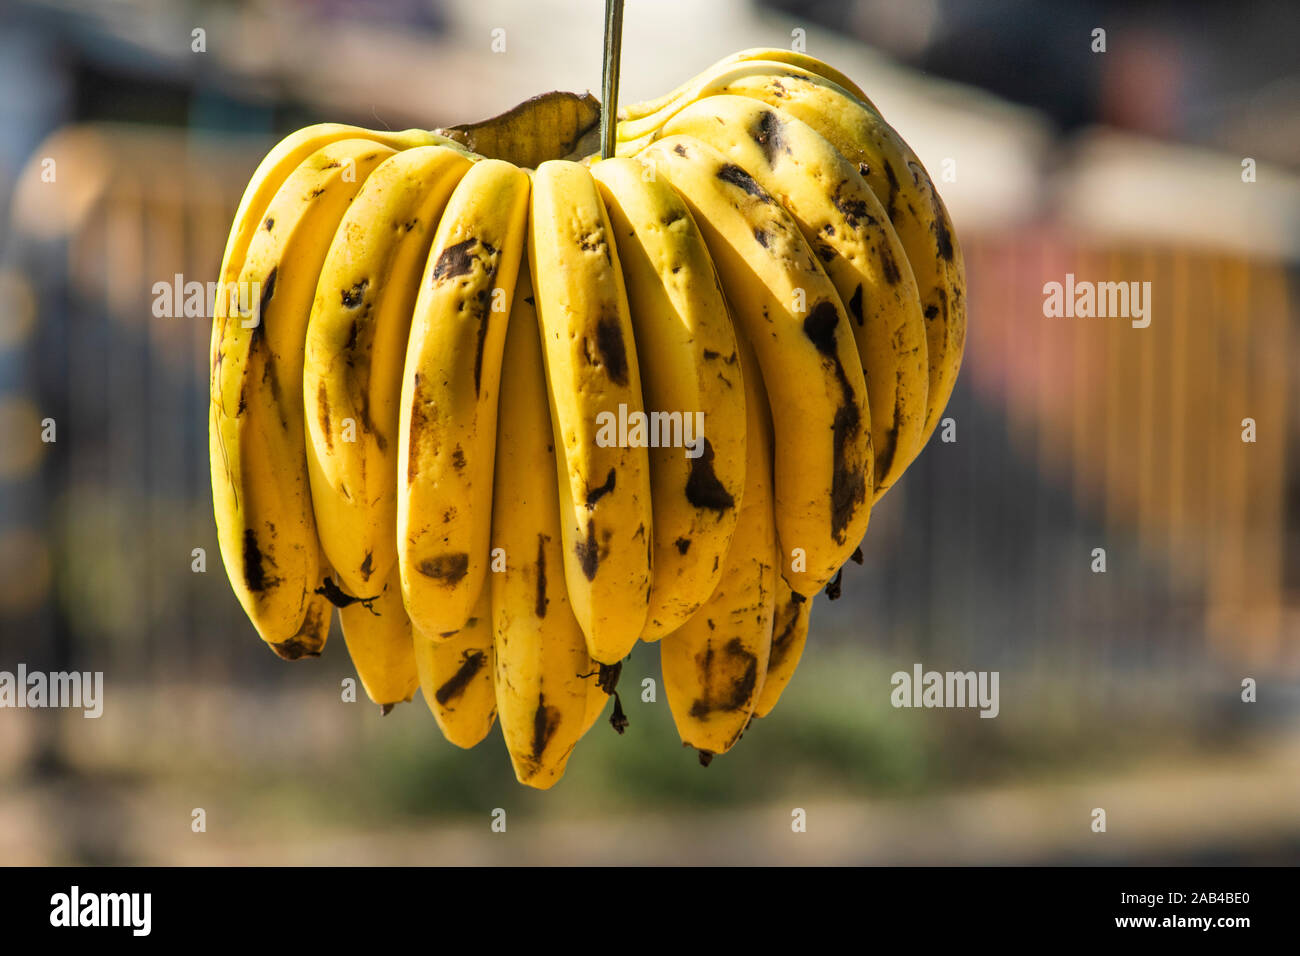 Bunch of bananas hanging at a shop in Sijhora, Madhya Pradesh, India. Stock Photo